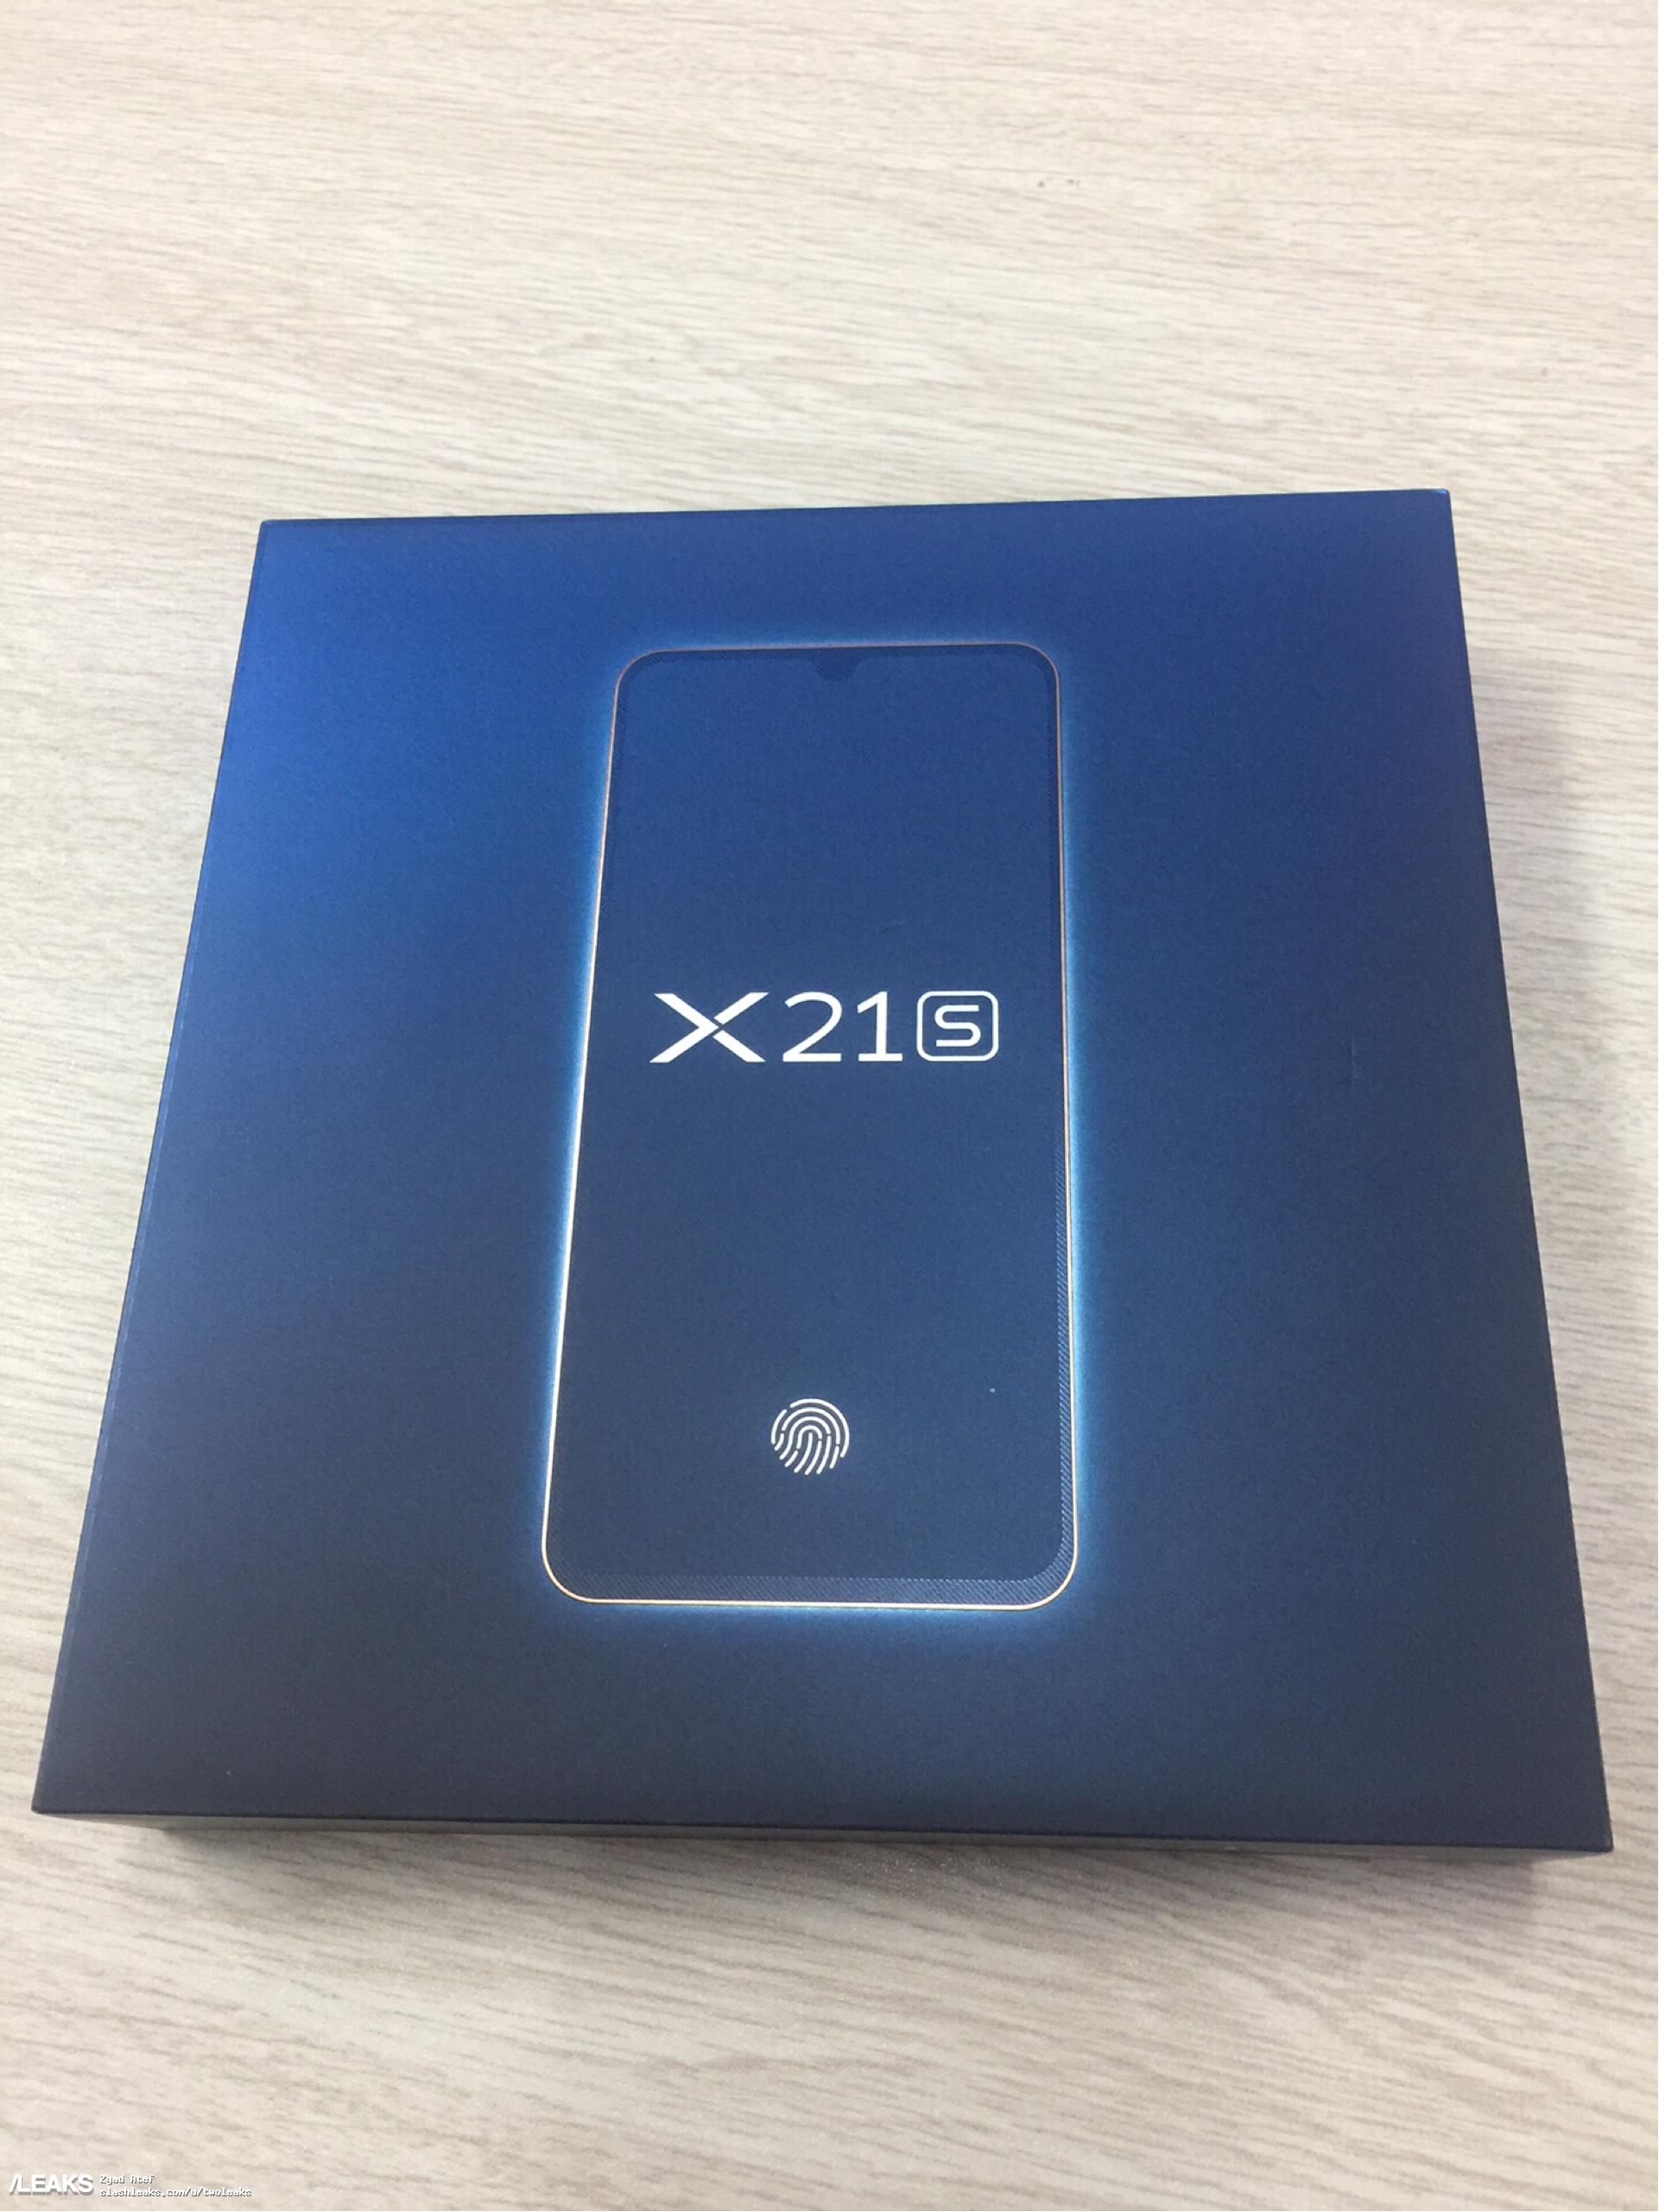 水滴屏vivo X21s开箱照曝光 6+128GB版售2798元对标OPPO R15X